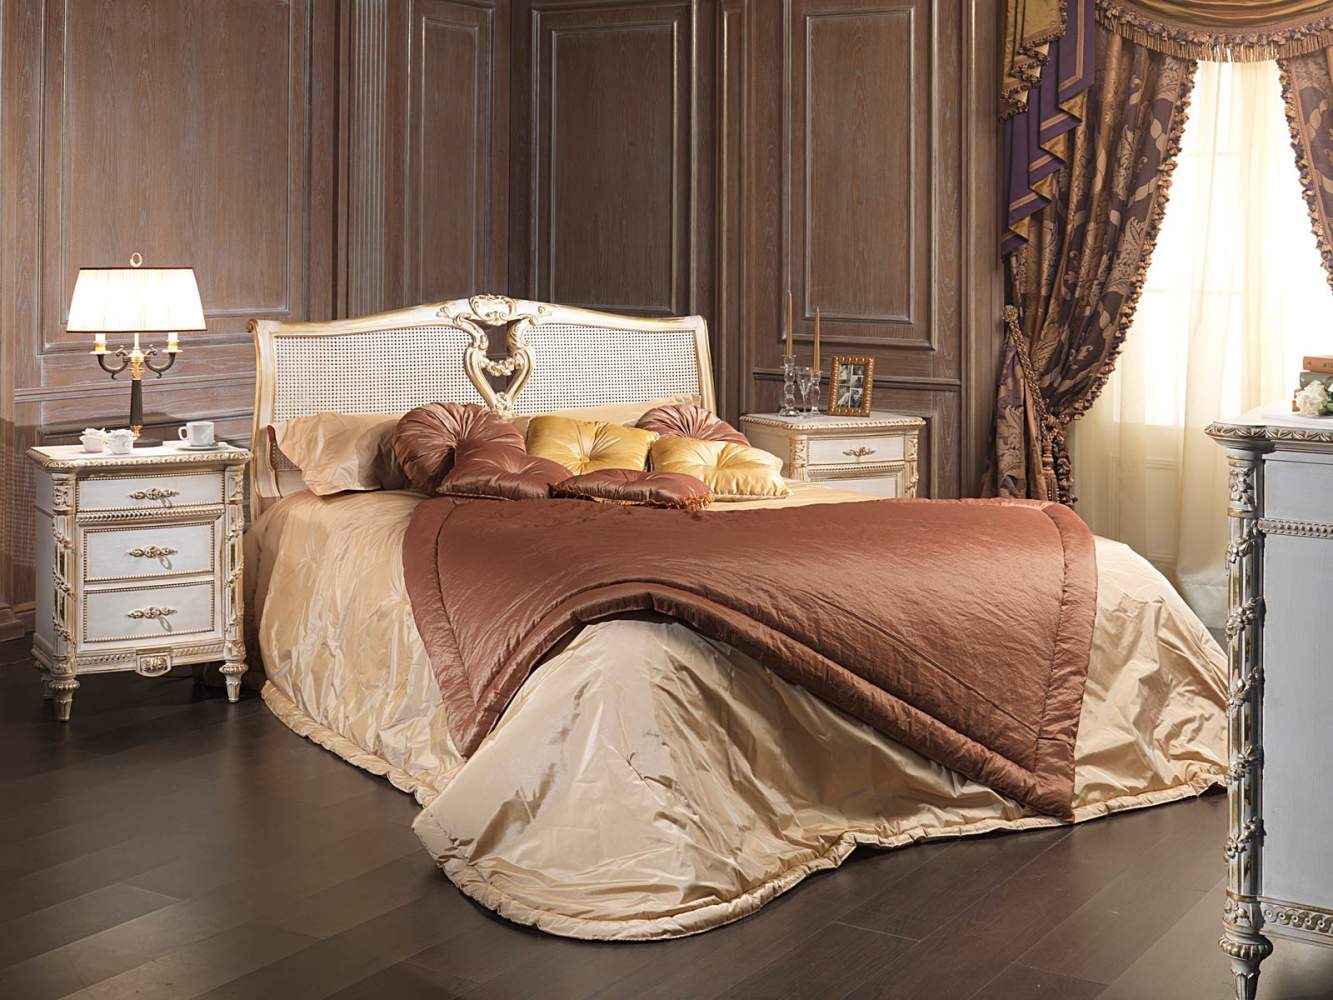 Camera da letto classica in stile Luigi XVI, letto con testata in canna d'india